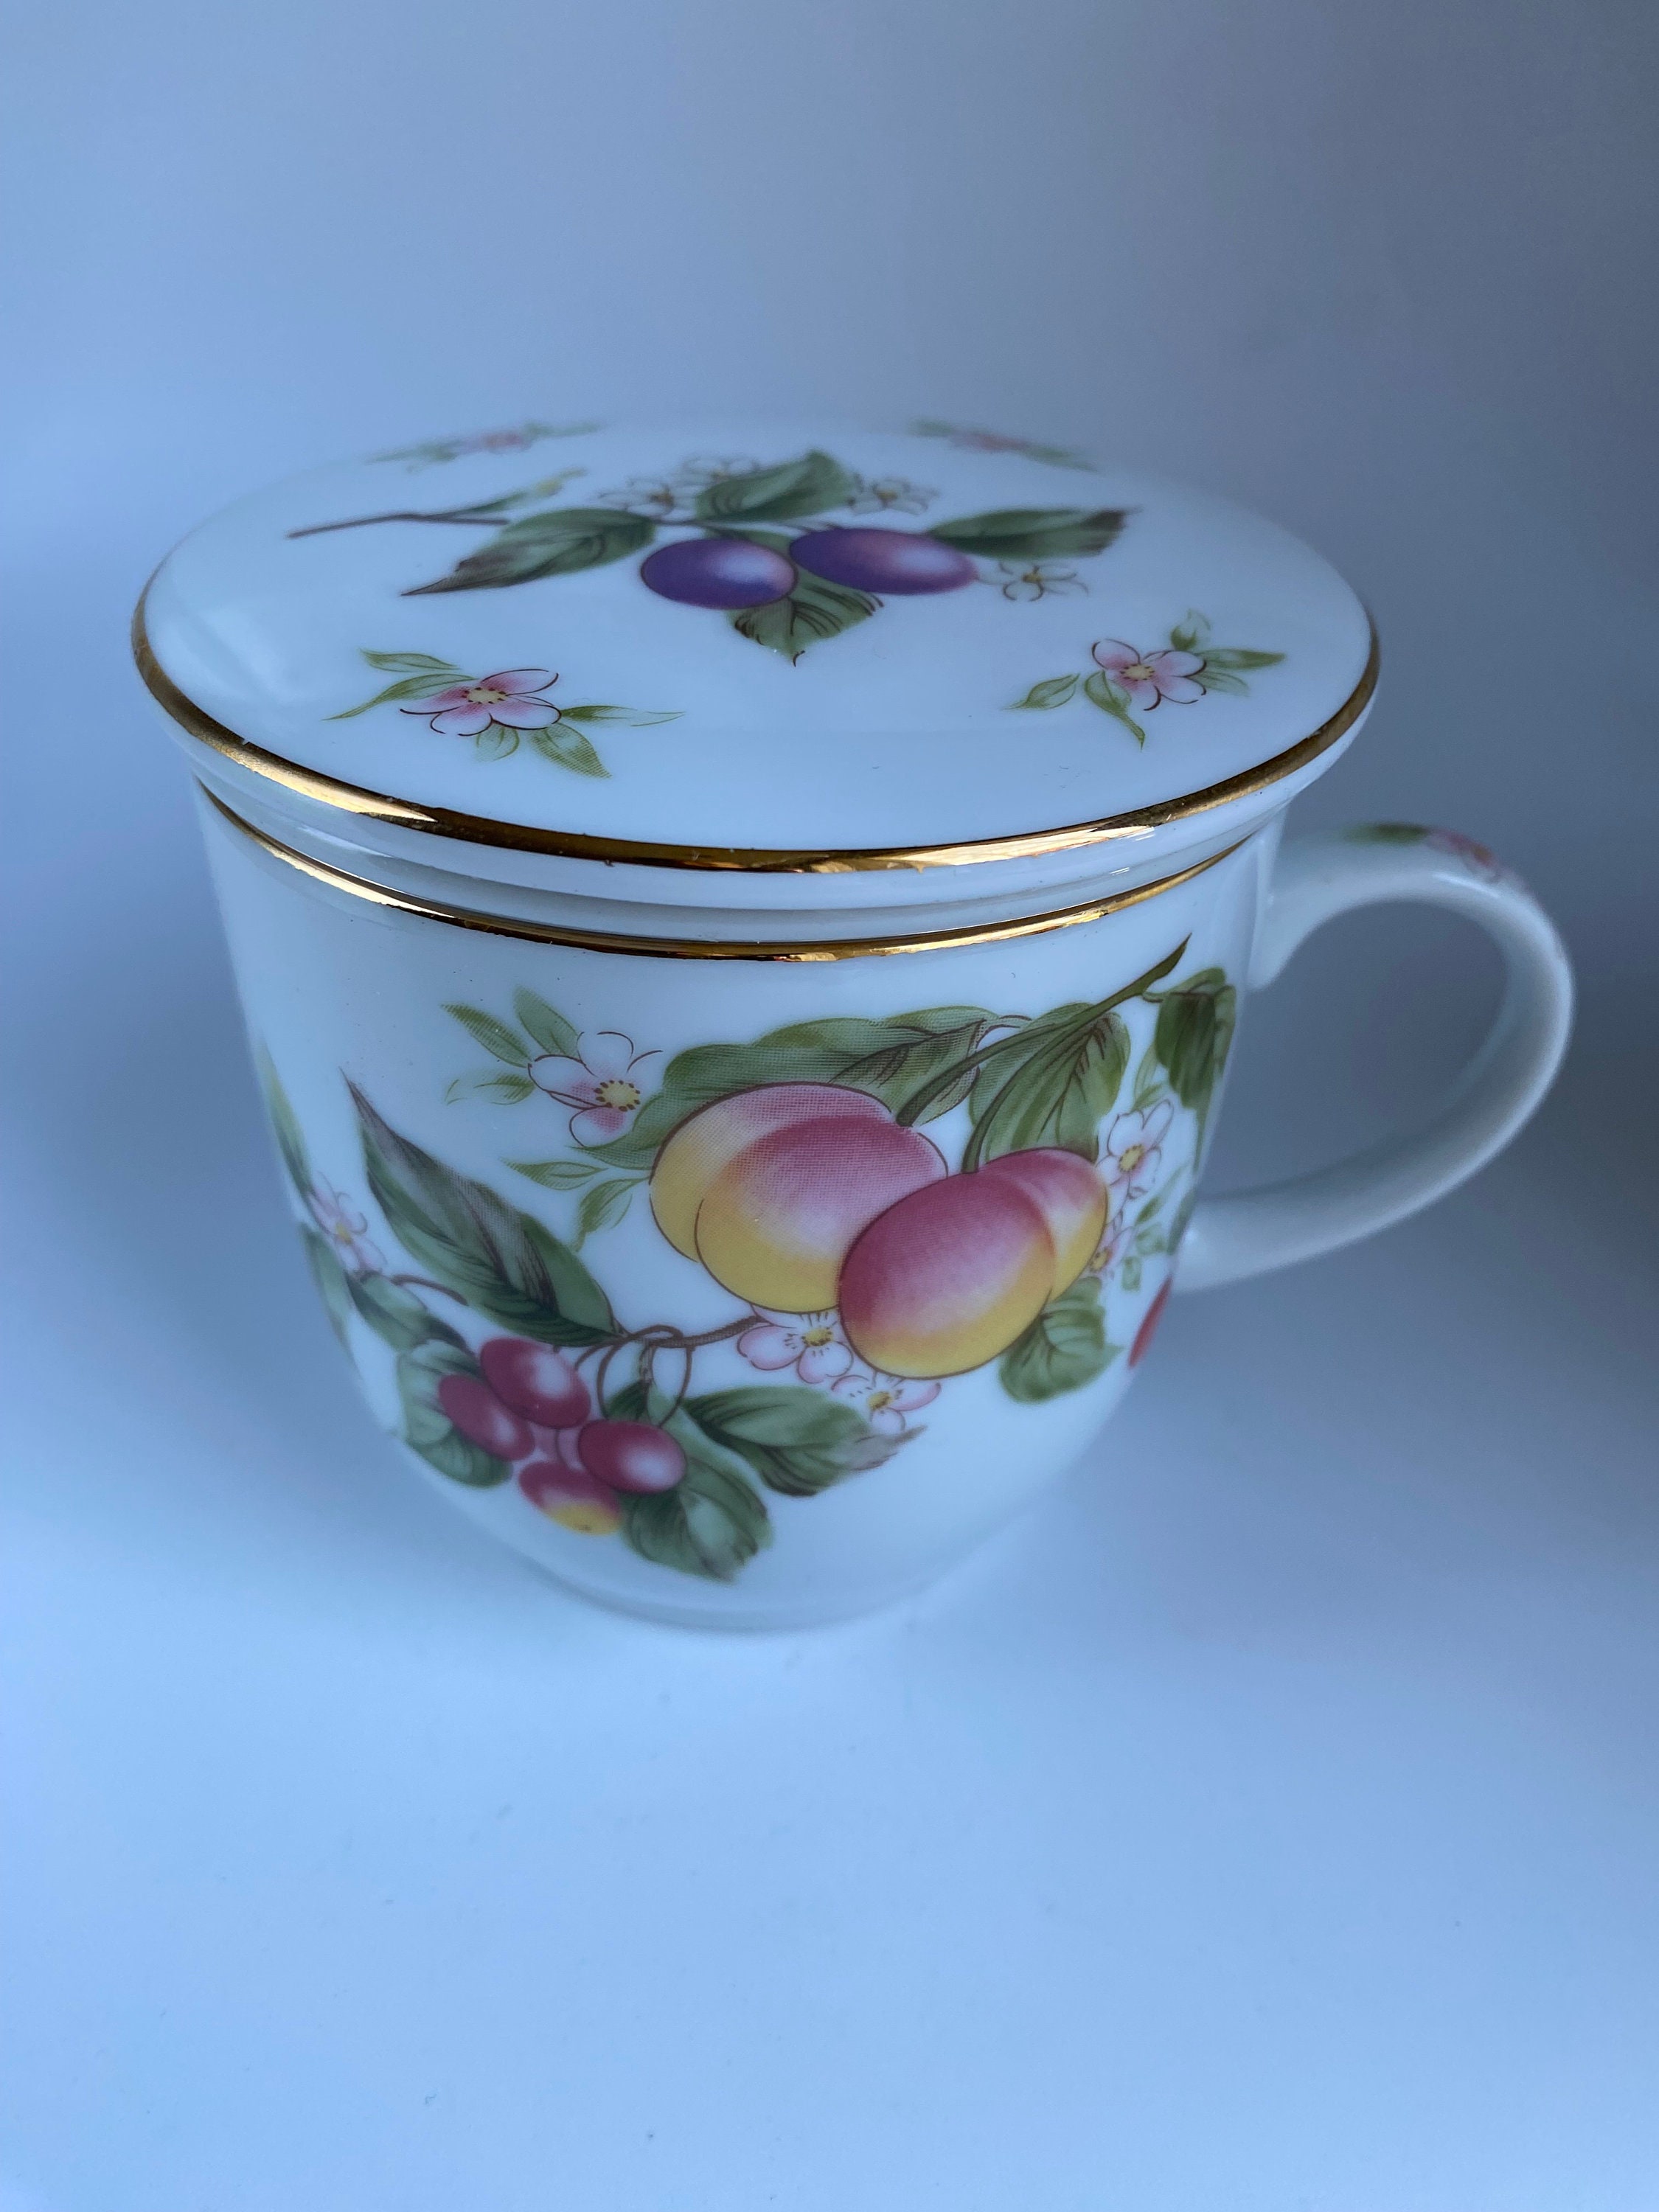 AmorArc Porcelain Tea Mug with Infuser and Lids, 18 Oz Tea Cup Strainer  with Tea Bag Holder for Loos…See more AmorArc Porcelain Tea Mug with  Infuser